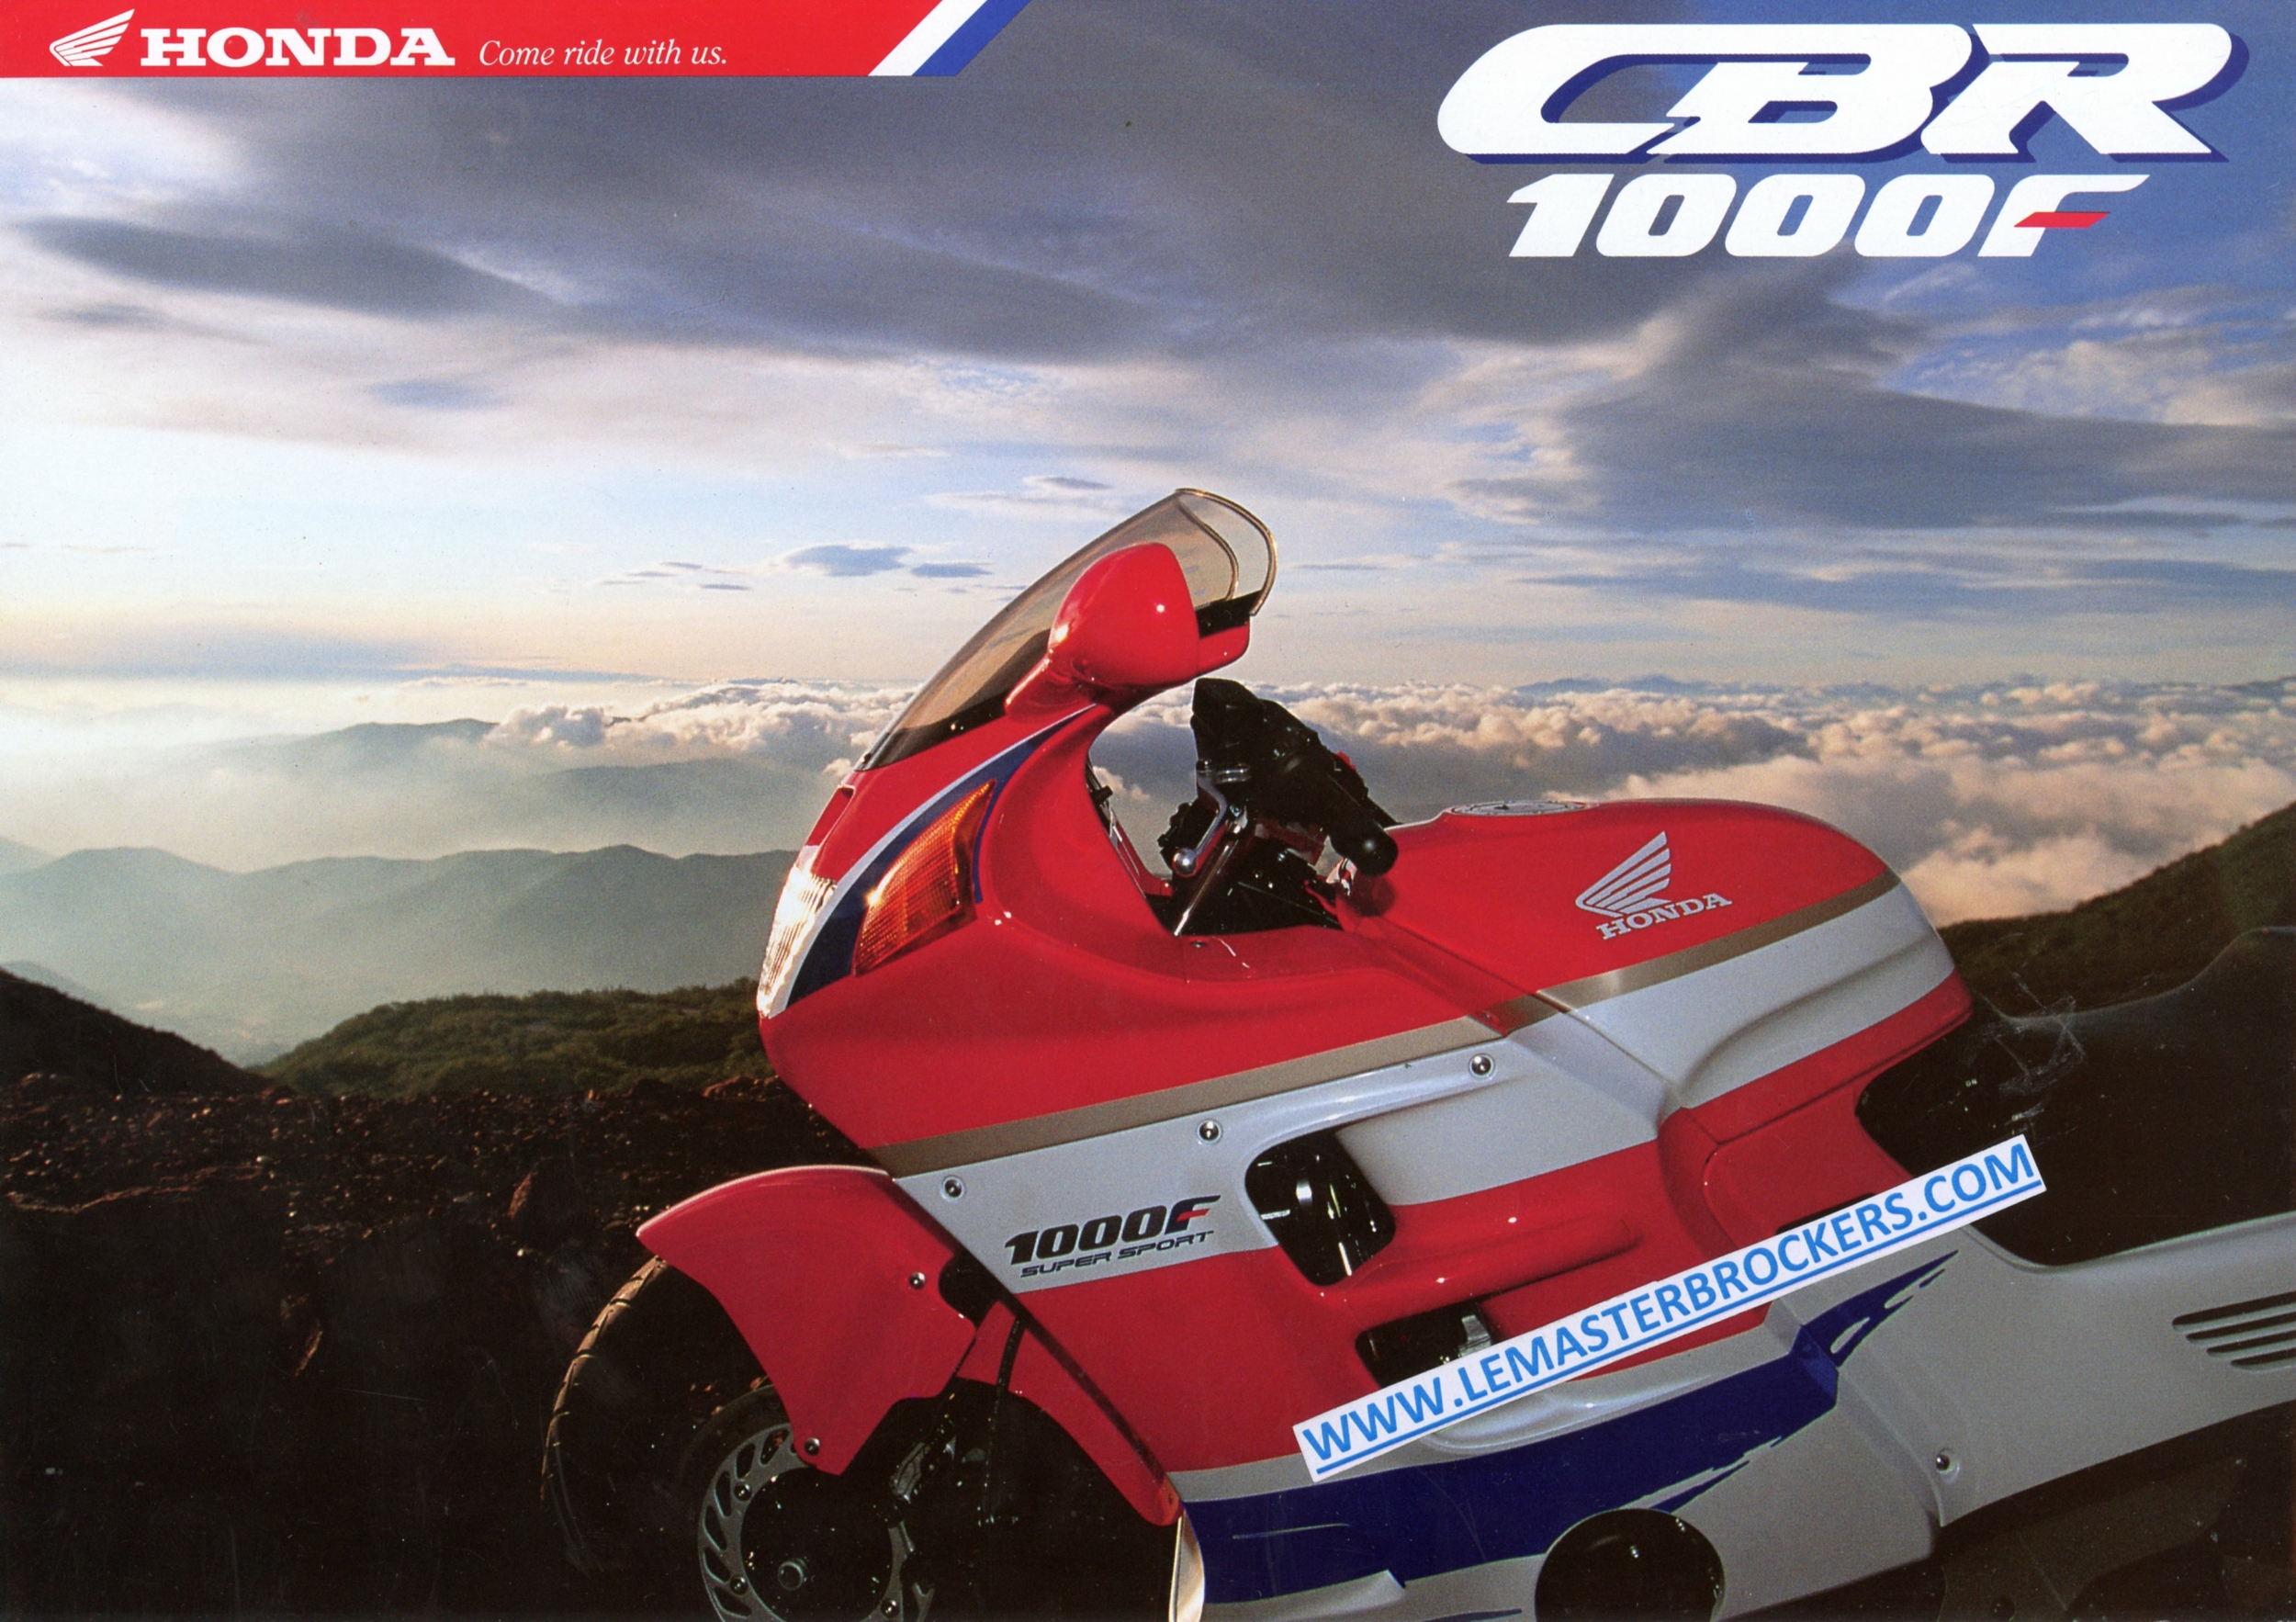 HONDA-CBR-1000-CBR1000F-LEMASTERBROCKERS-BROCHURE-MOTO-HONDA